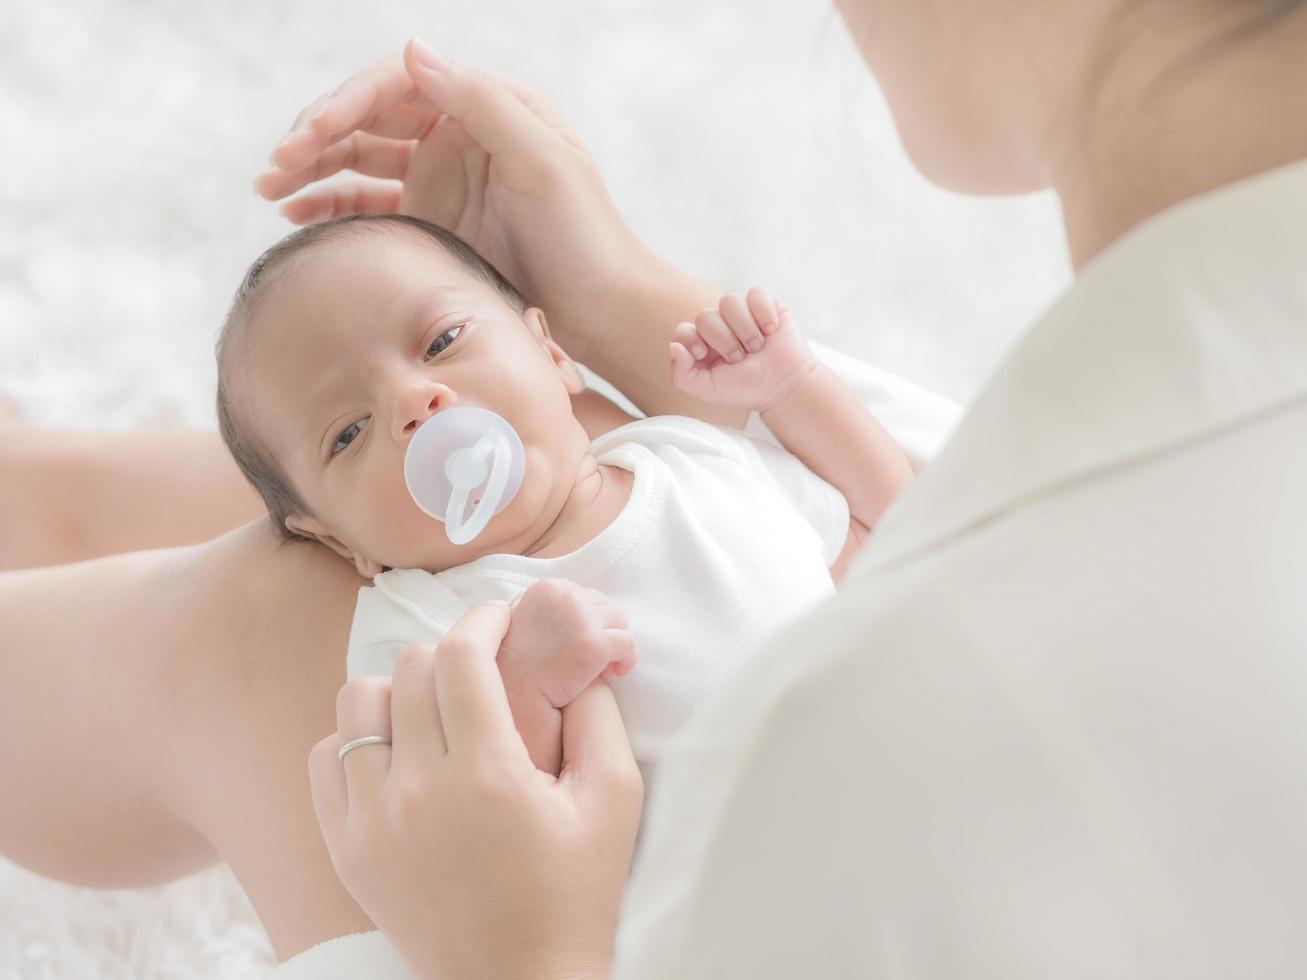 uma linda mulher asiática coloca seu bebê recém-nascido em seu corpo foto